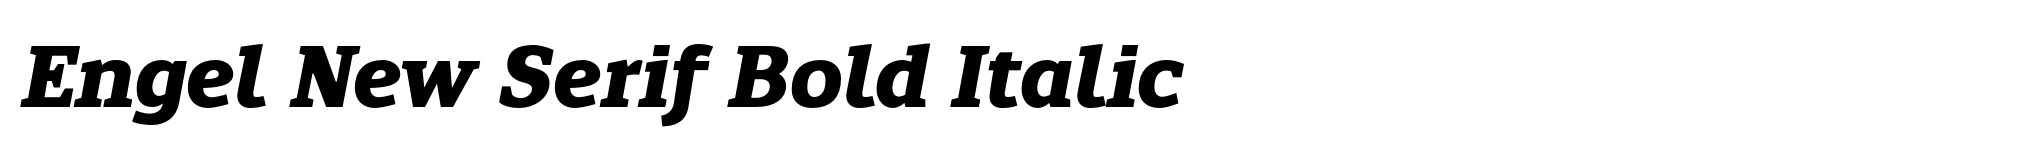 Engel New Serif Bold Italic image